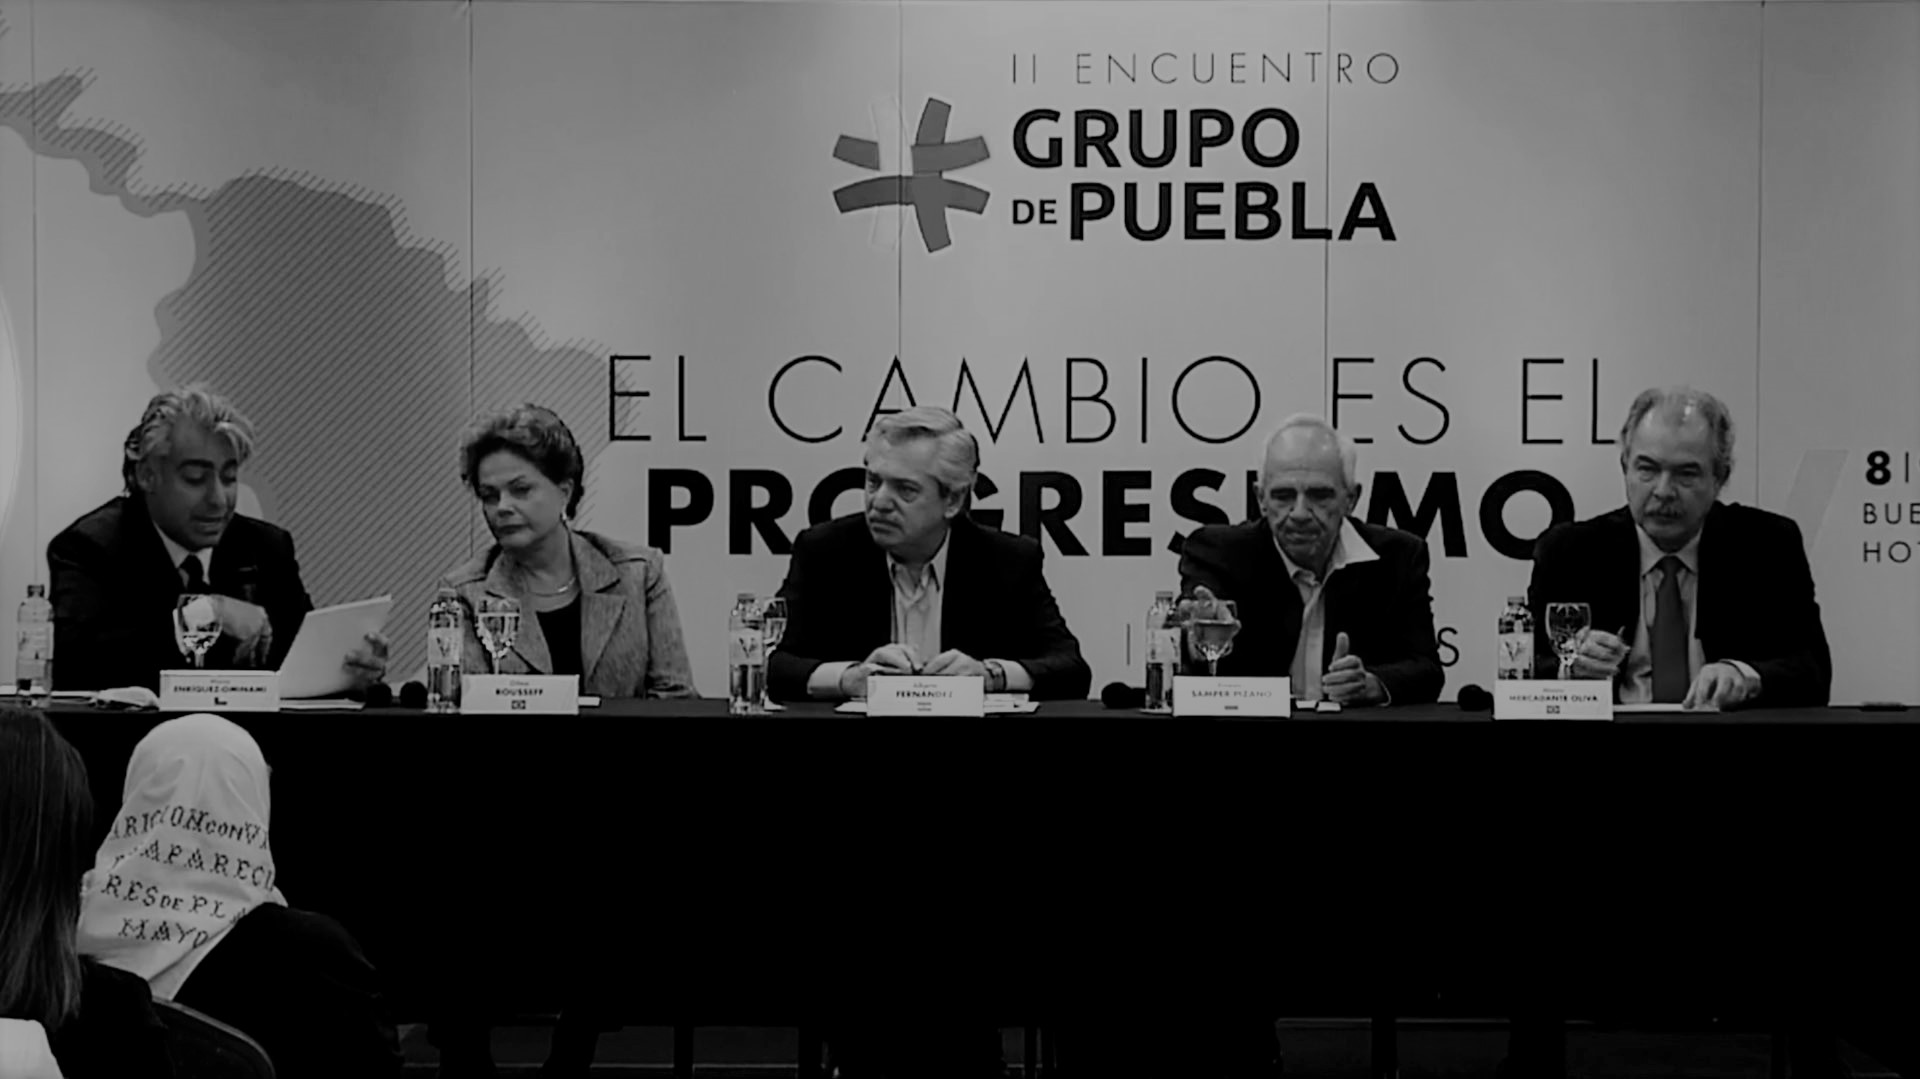 Foro Madrid denunció que el Grupo de Puebla pretende lavarse la cara respecto a la tiranía nicaragüense